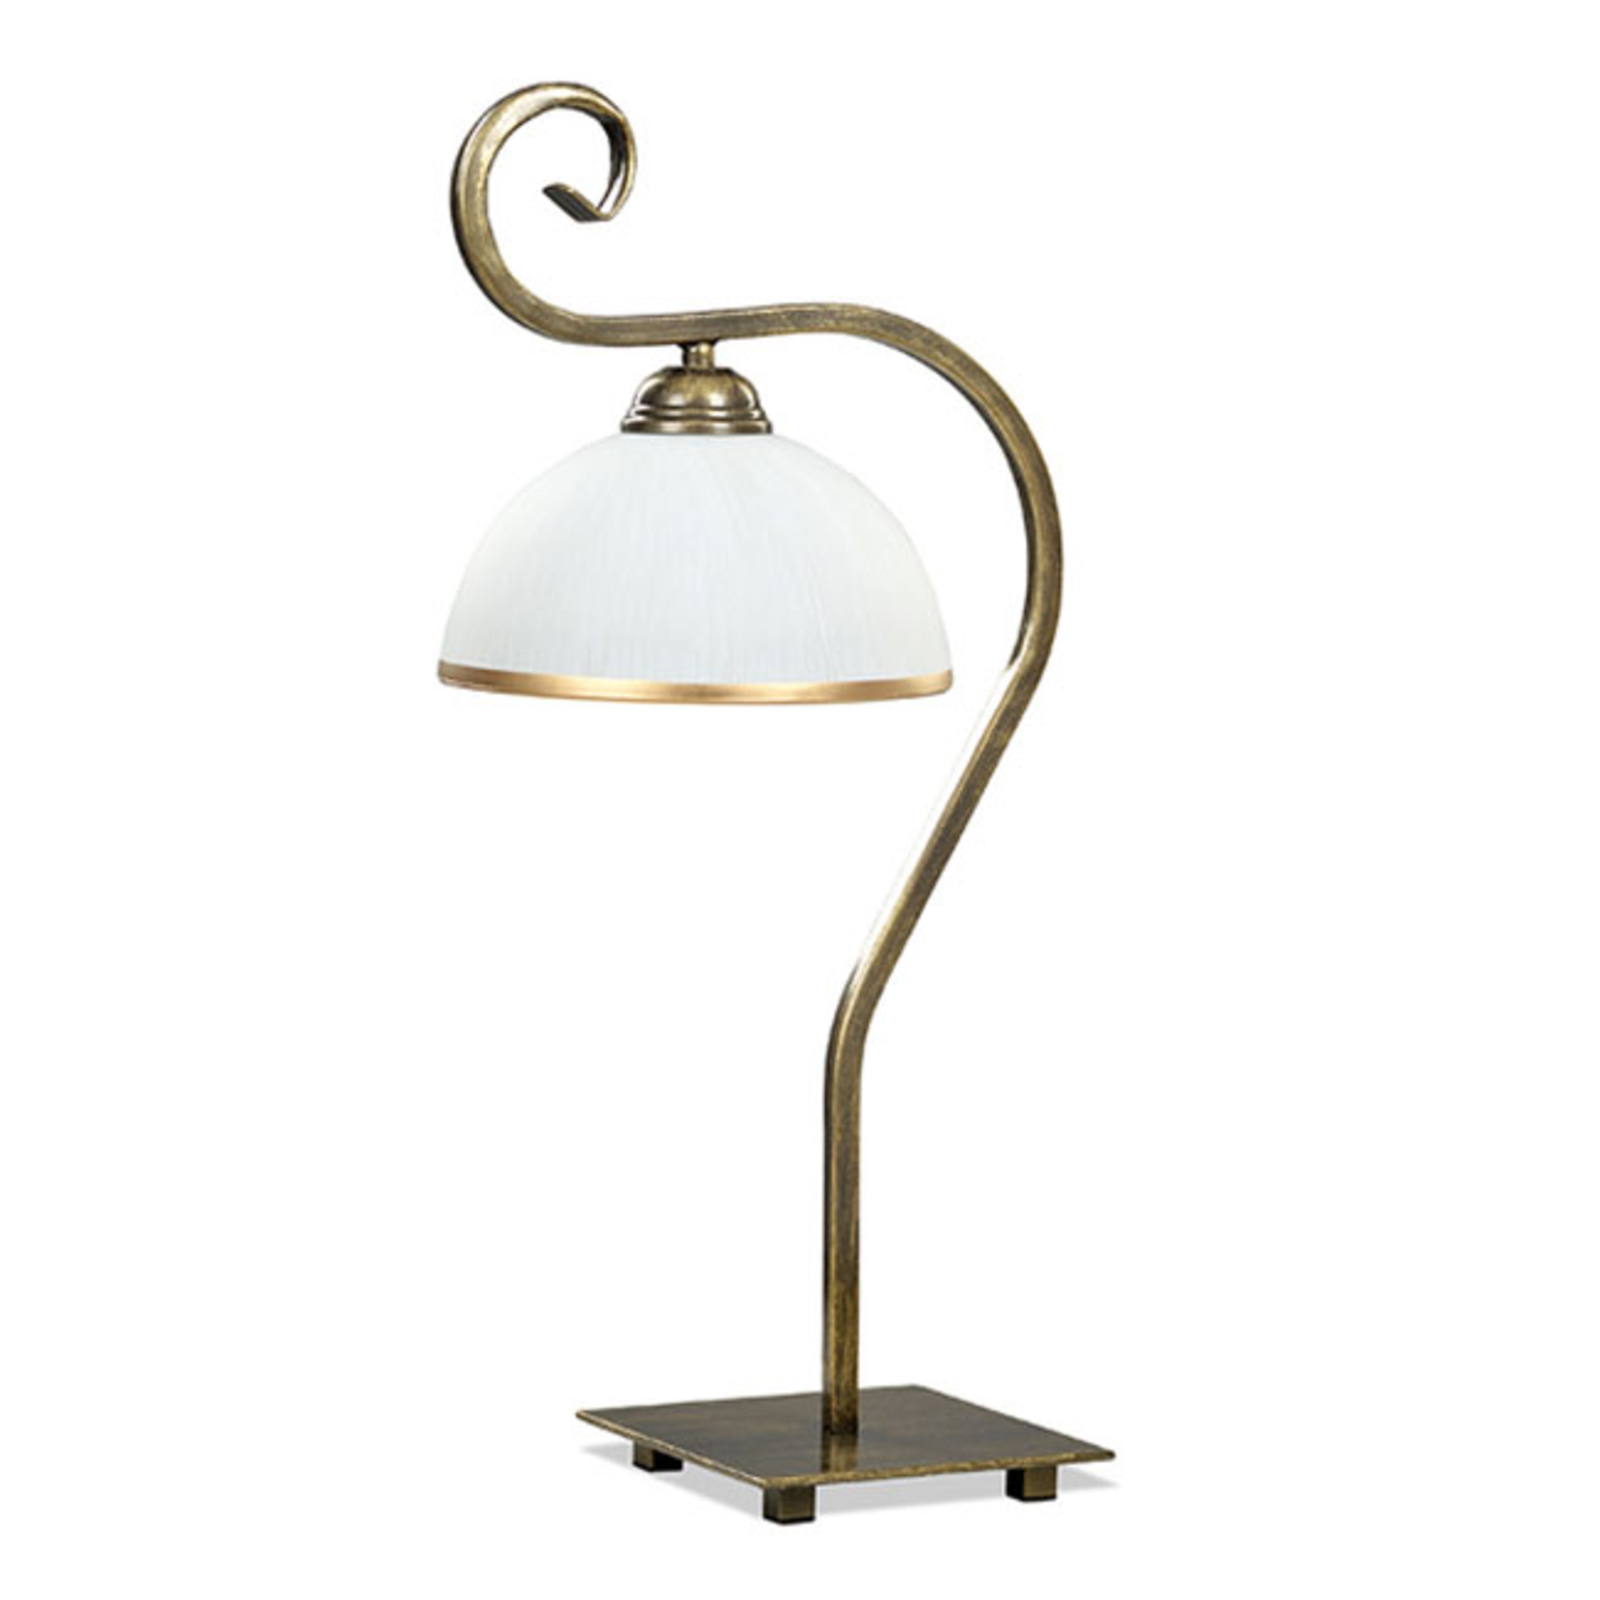 Lampa stołowa Wivara LN1 klasyczny design, złota